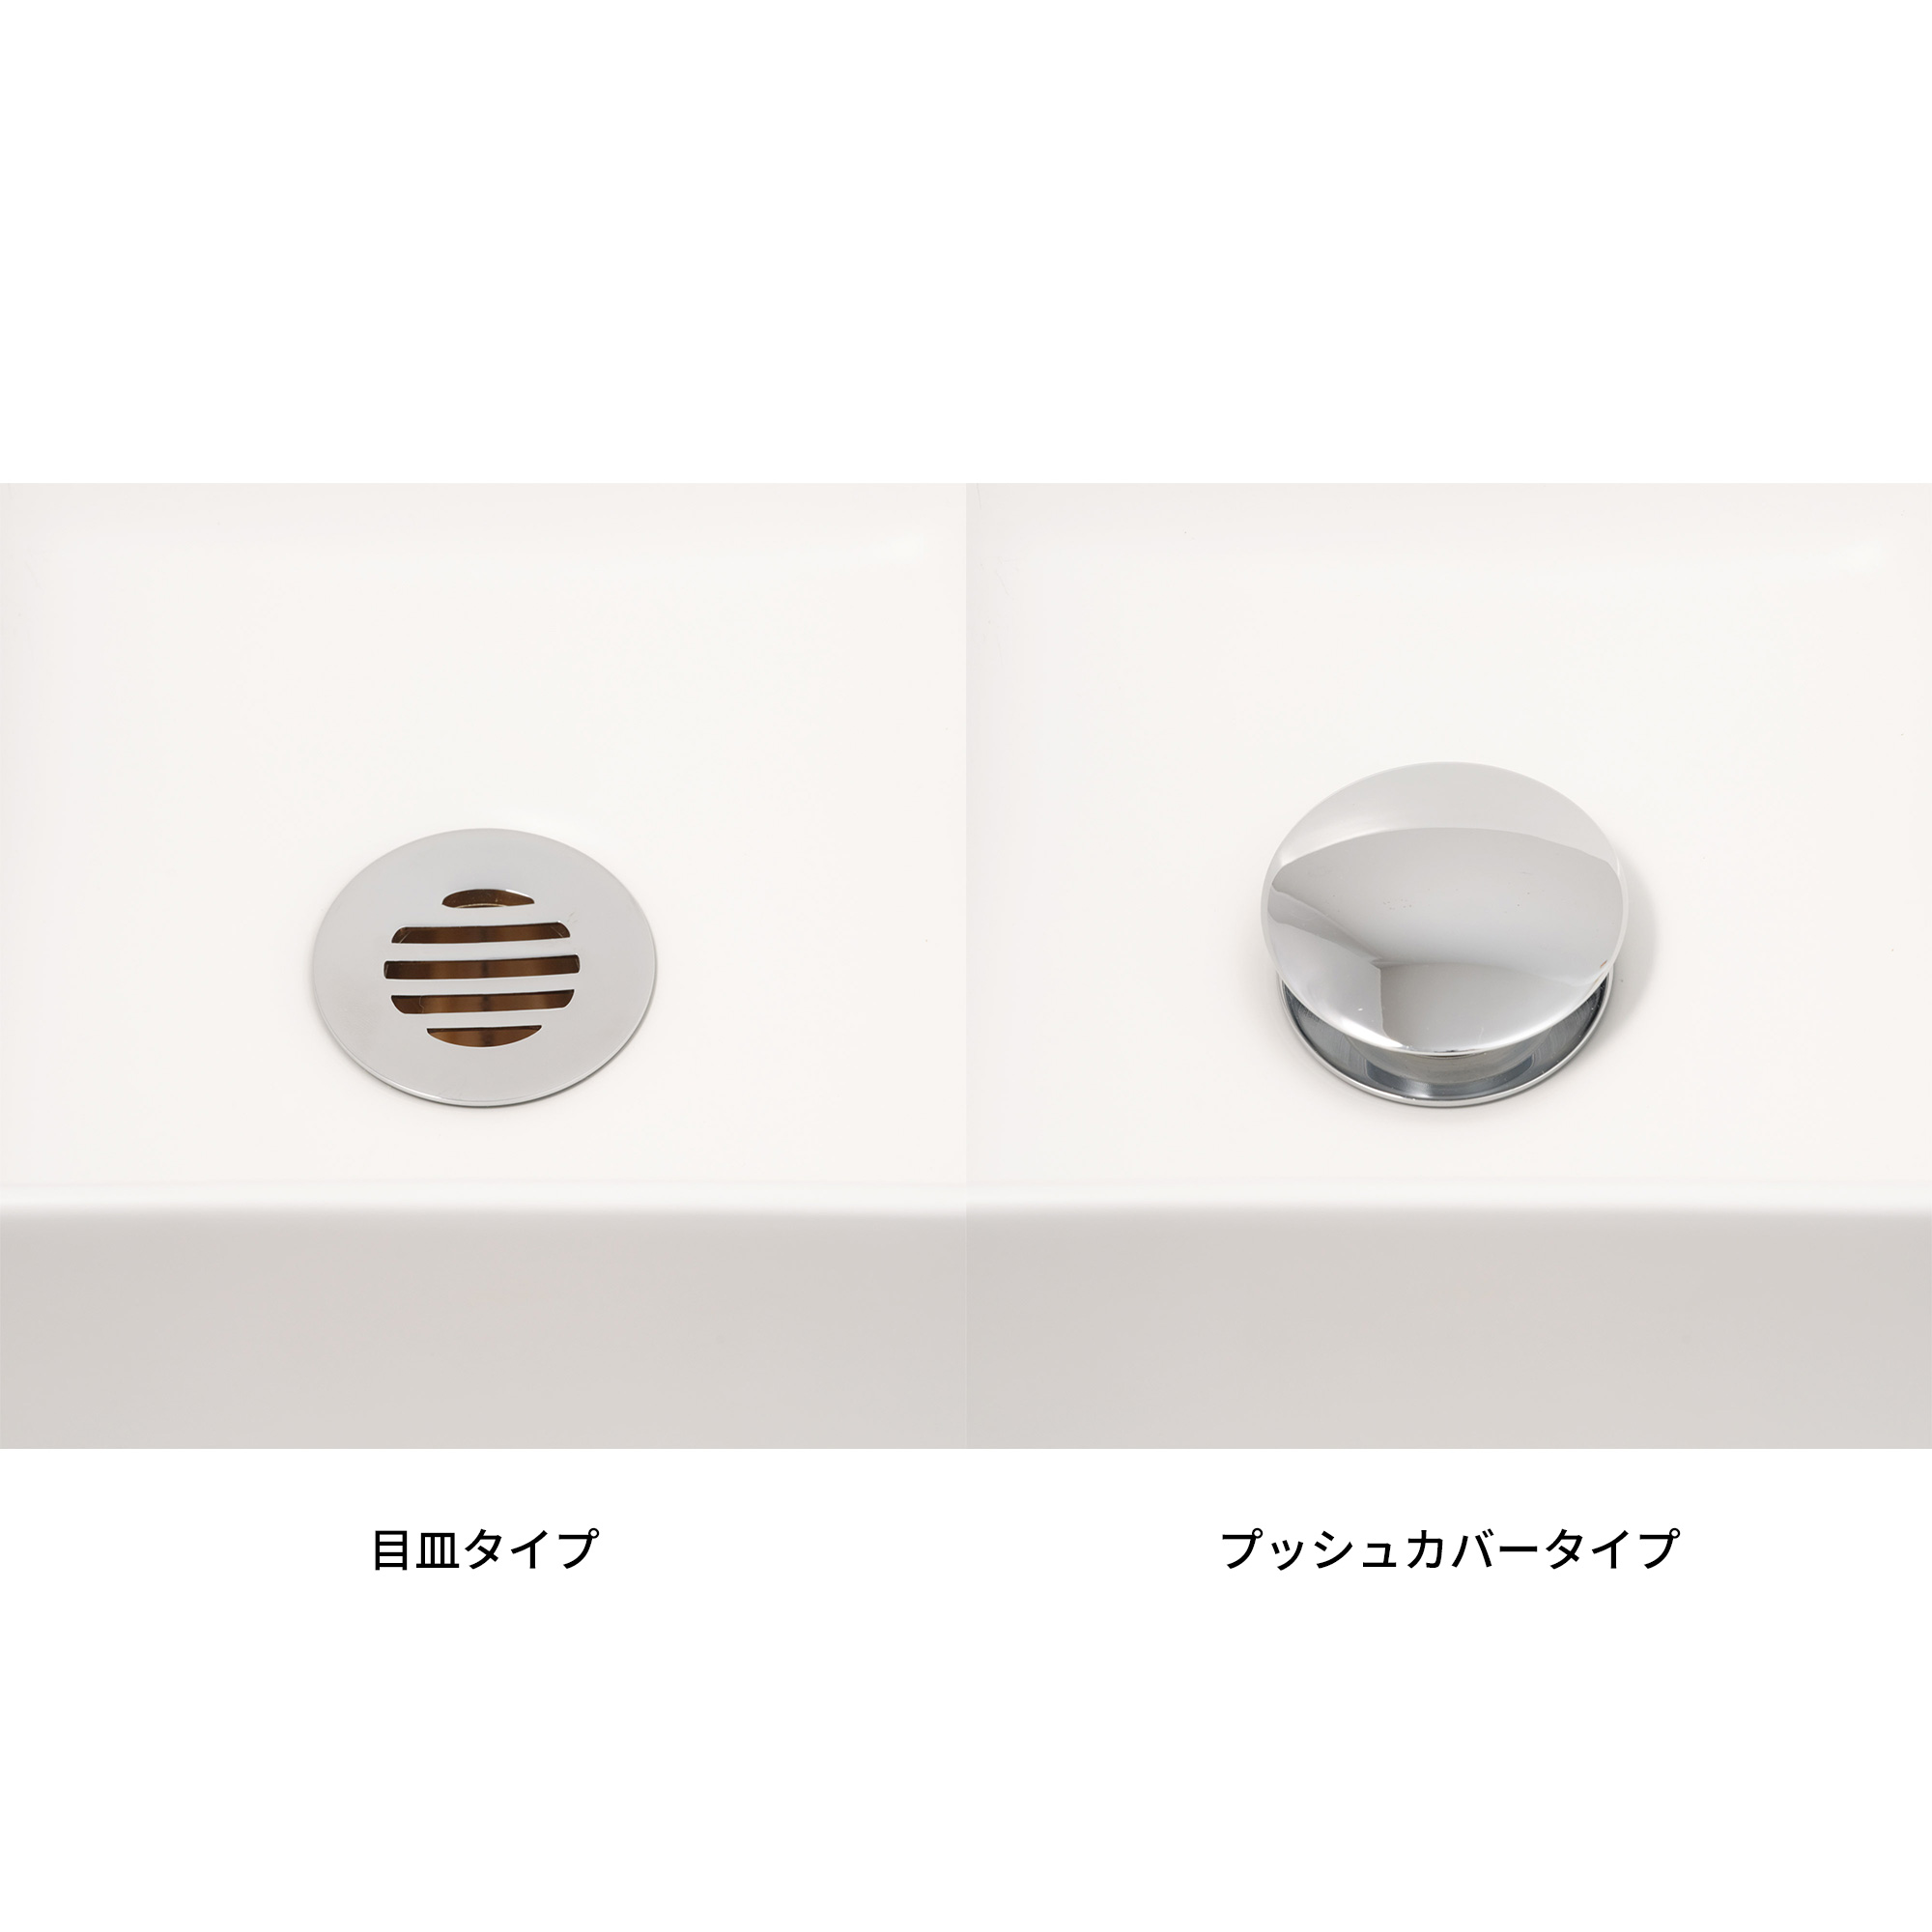 木の手洗いカウンター 陶器の手洗い器 丸350 壁水栓用 KB-PR013-03-G165 プッシュタイプは上のカバーを取外すことができます。目皿タイプは取外しできません